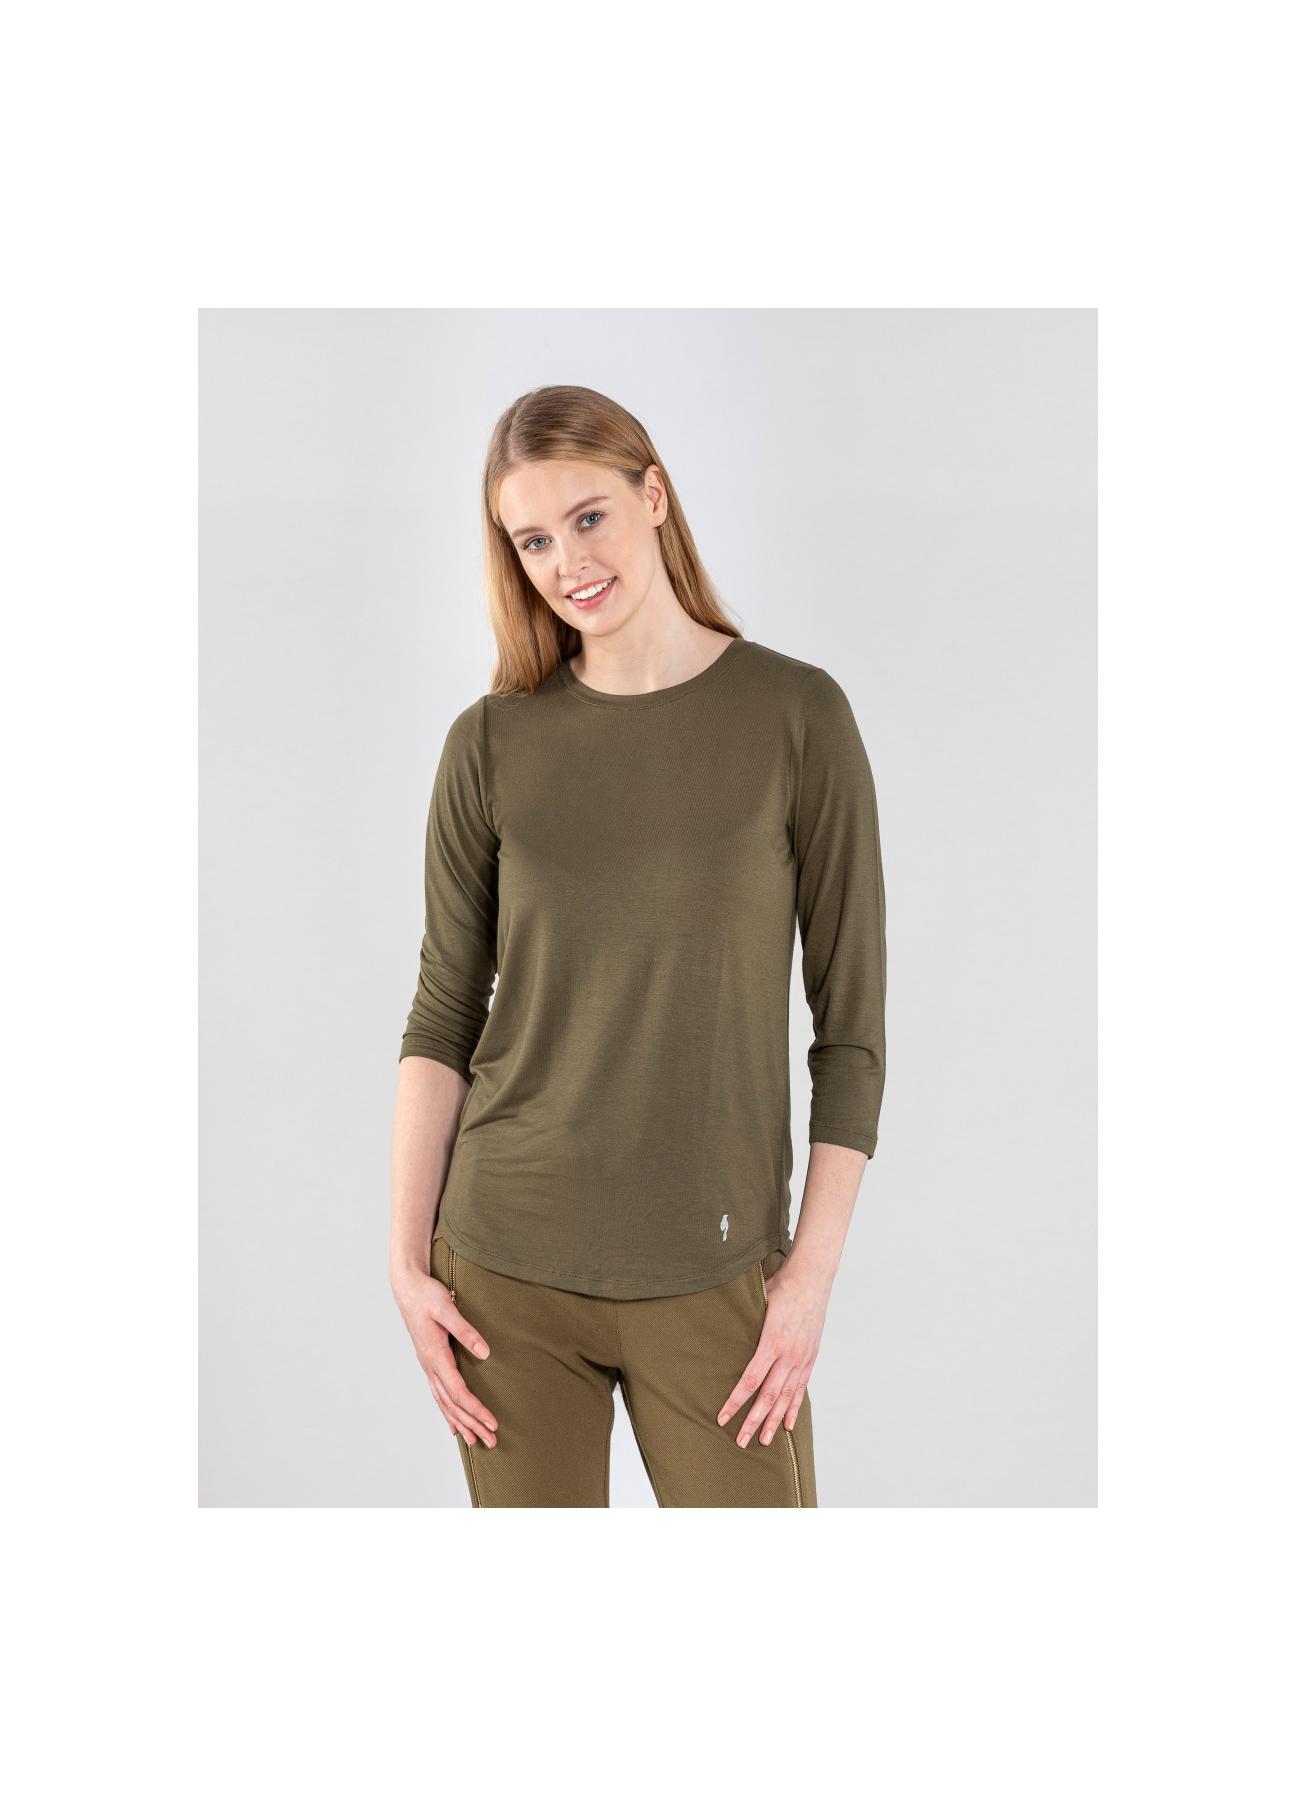 Luźna bluzka damska w kolorze khaki LSLDT-0015-55(Z20)